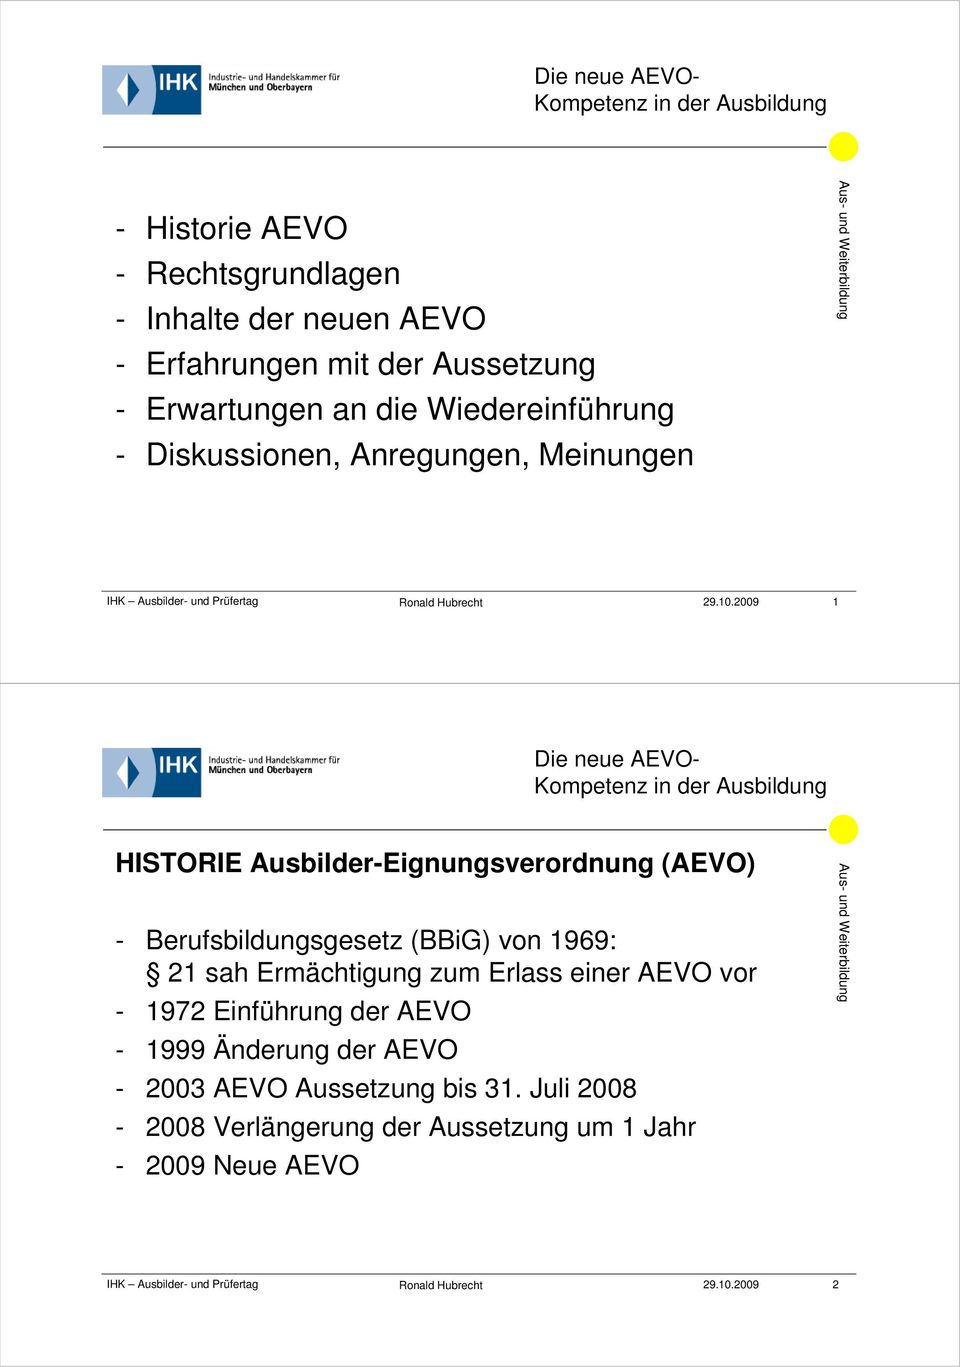 2009 1 HISTORIE Ausbilder-Eignungsverordnung (AEVO) - Berufsbildungsgesetz (BBiG) von 1969: 21 sah Ermächtigung zum Erlass einer AEVO